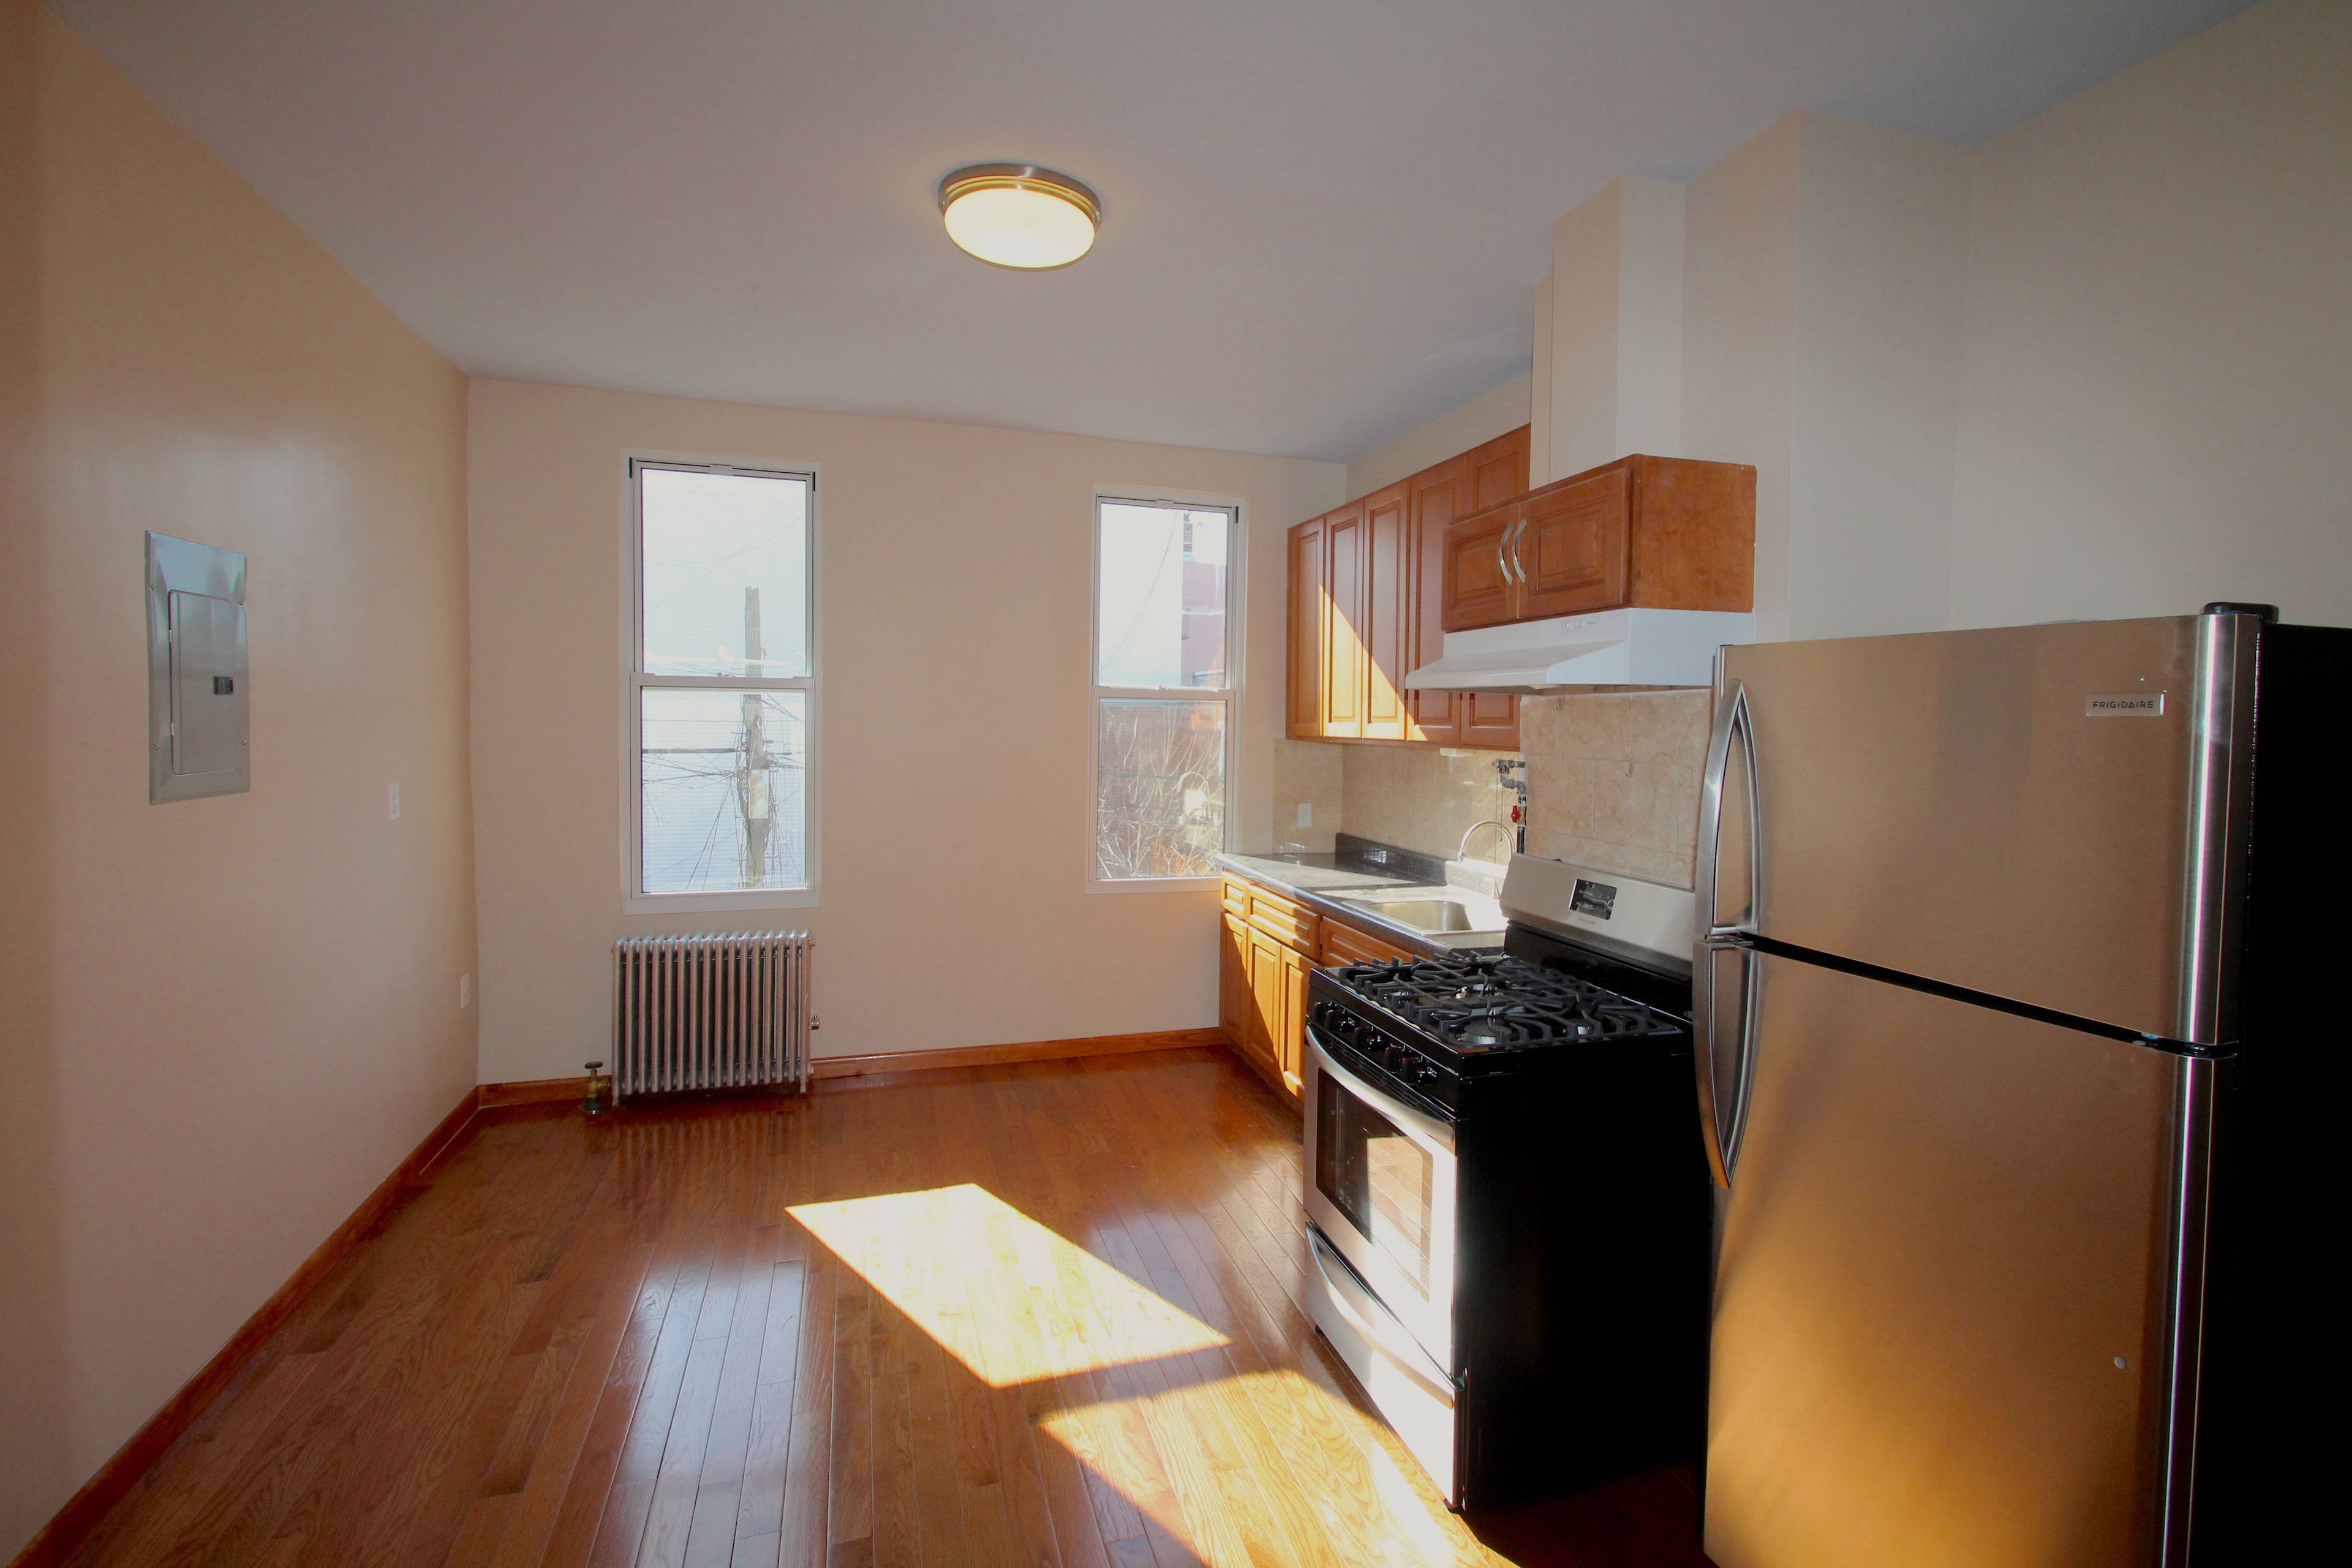 Ridgewood, Queens: Gut Renovated 2nd Floor 2 Bedroom Railroad Apartment For Rent